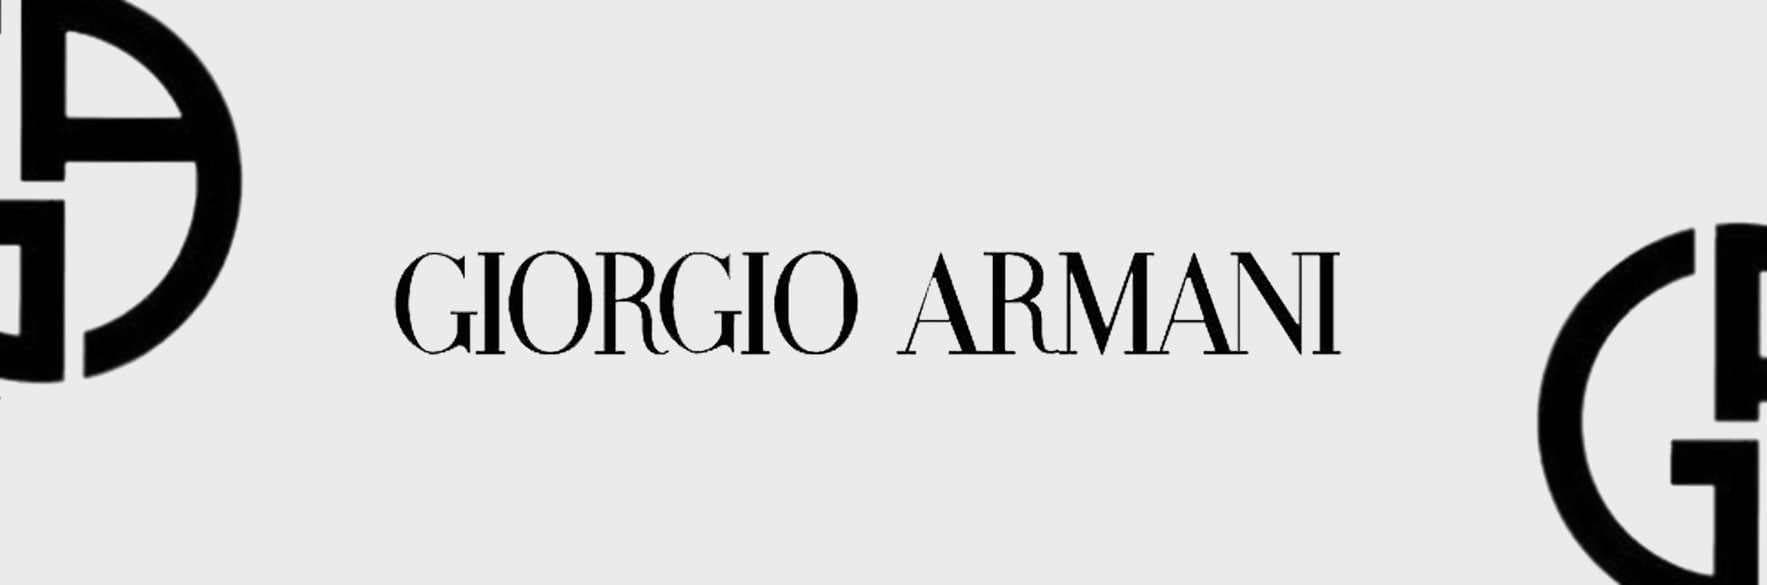 عطرهای جورجیو آرمانی GIORGIO ARMANI ایتالیا